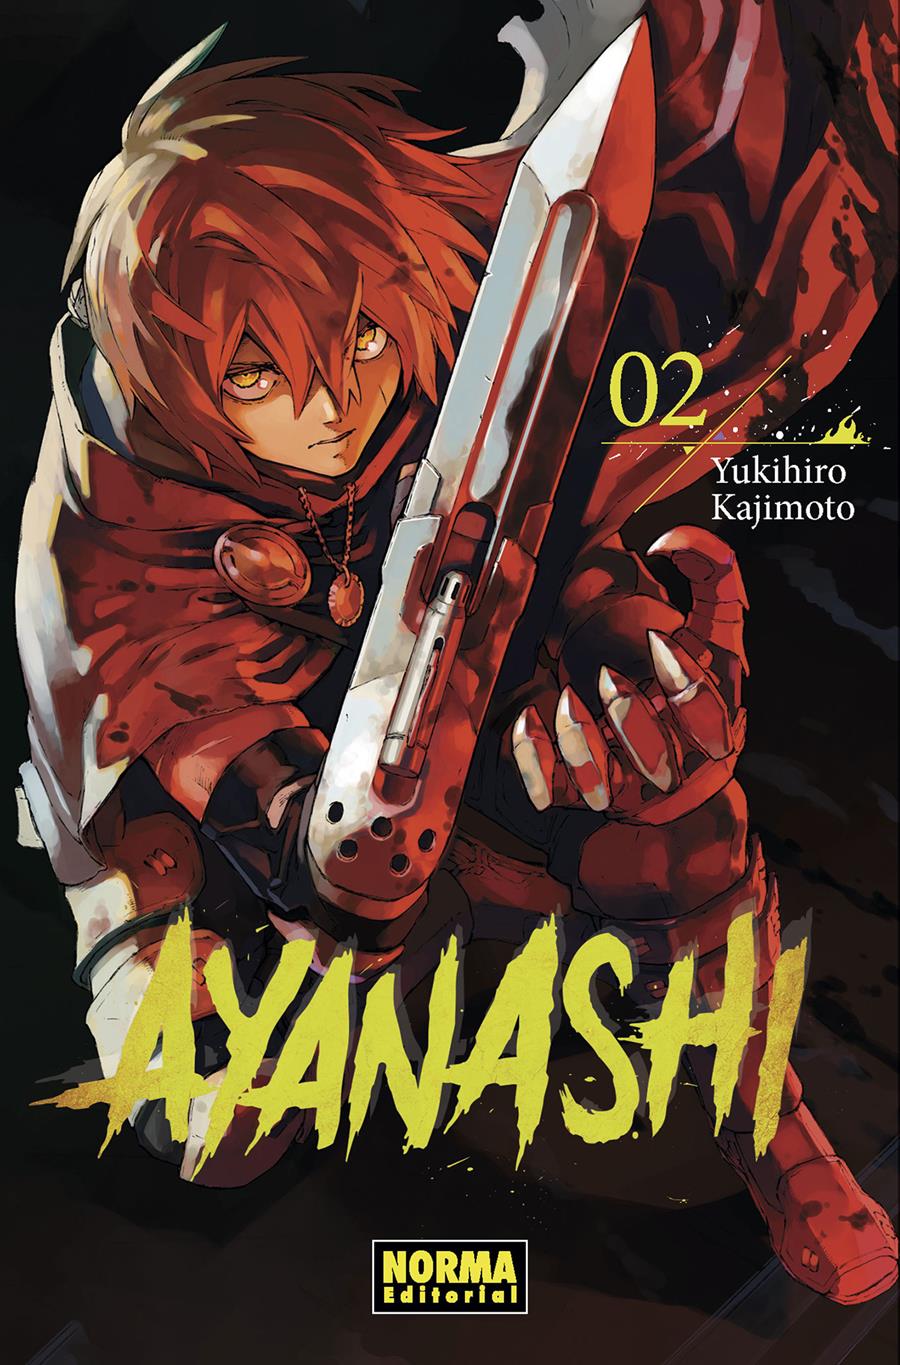 Ayanashi 02 | N0719-NOR32 | Yukihiro Kajimoto | Terra de Còmic - Tu tienda de cómics online especializada en cómics, manga y merchandising